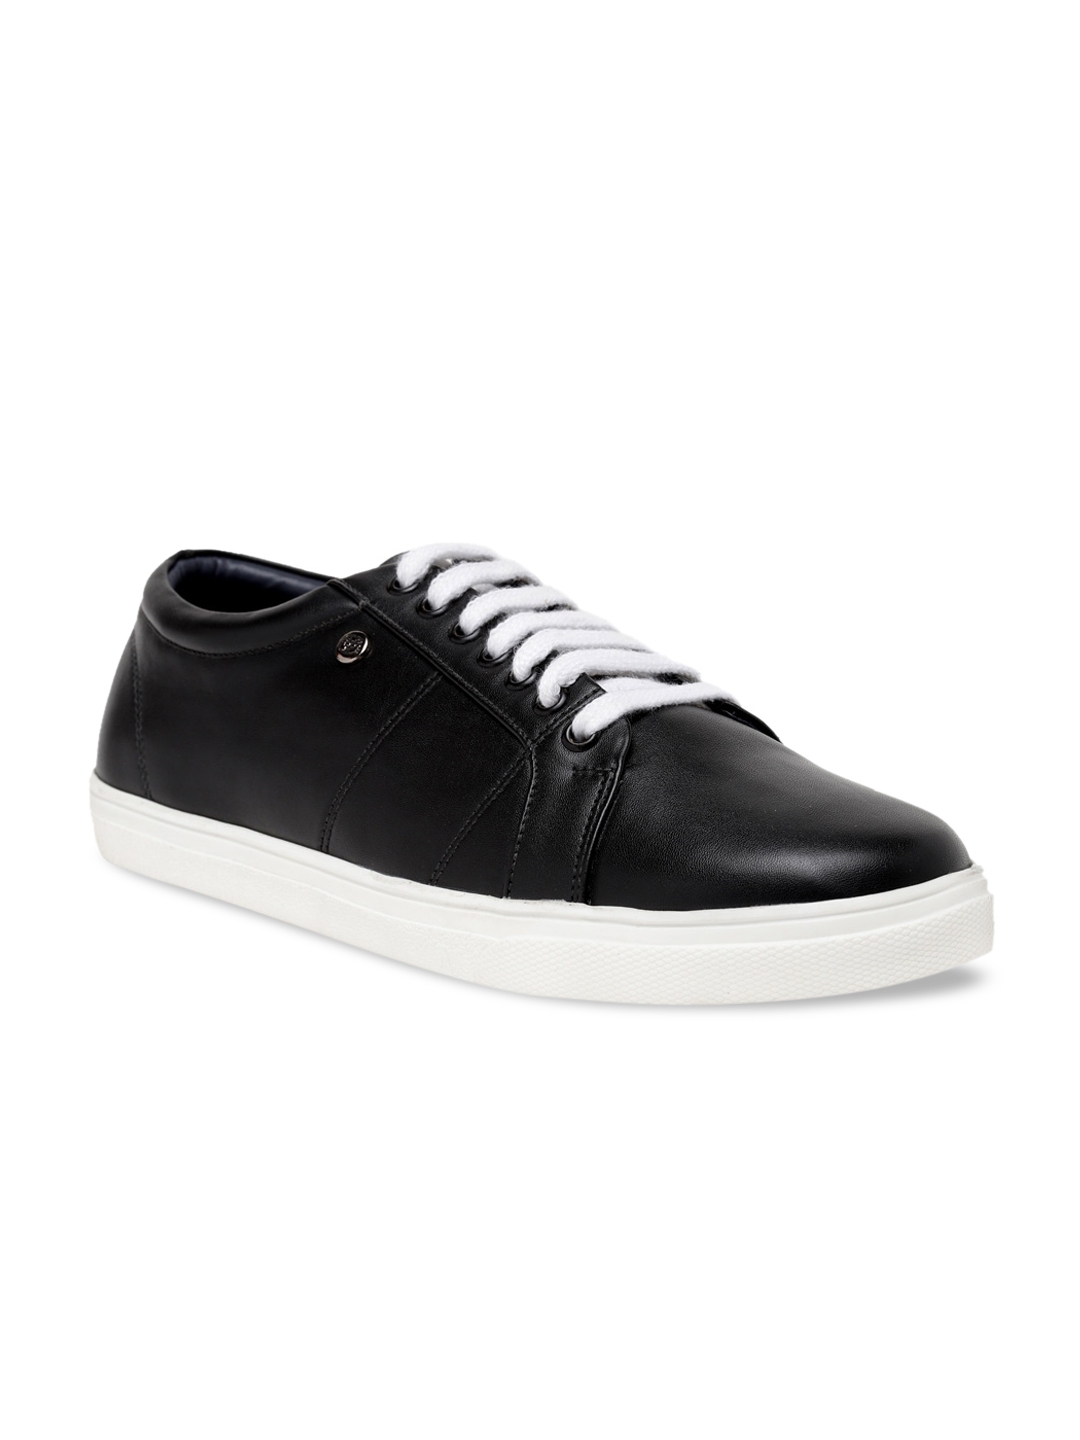 Buy BEAVER Men Black Regular Sneakers - Casual Shoes for Men 14512714 ...